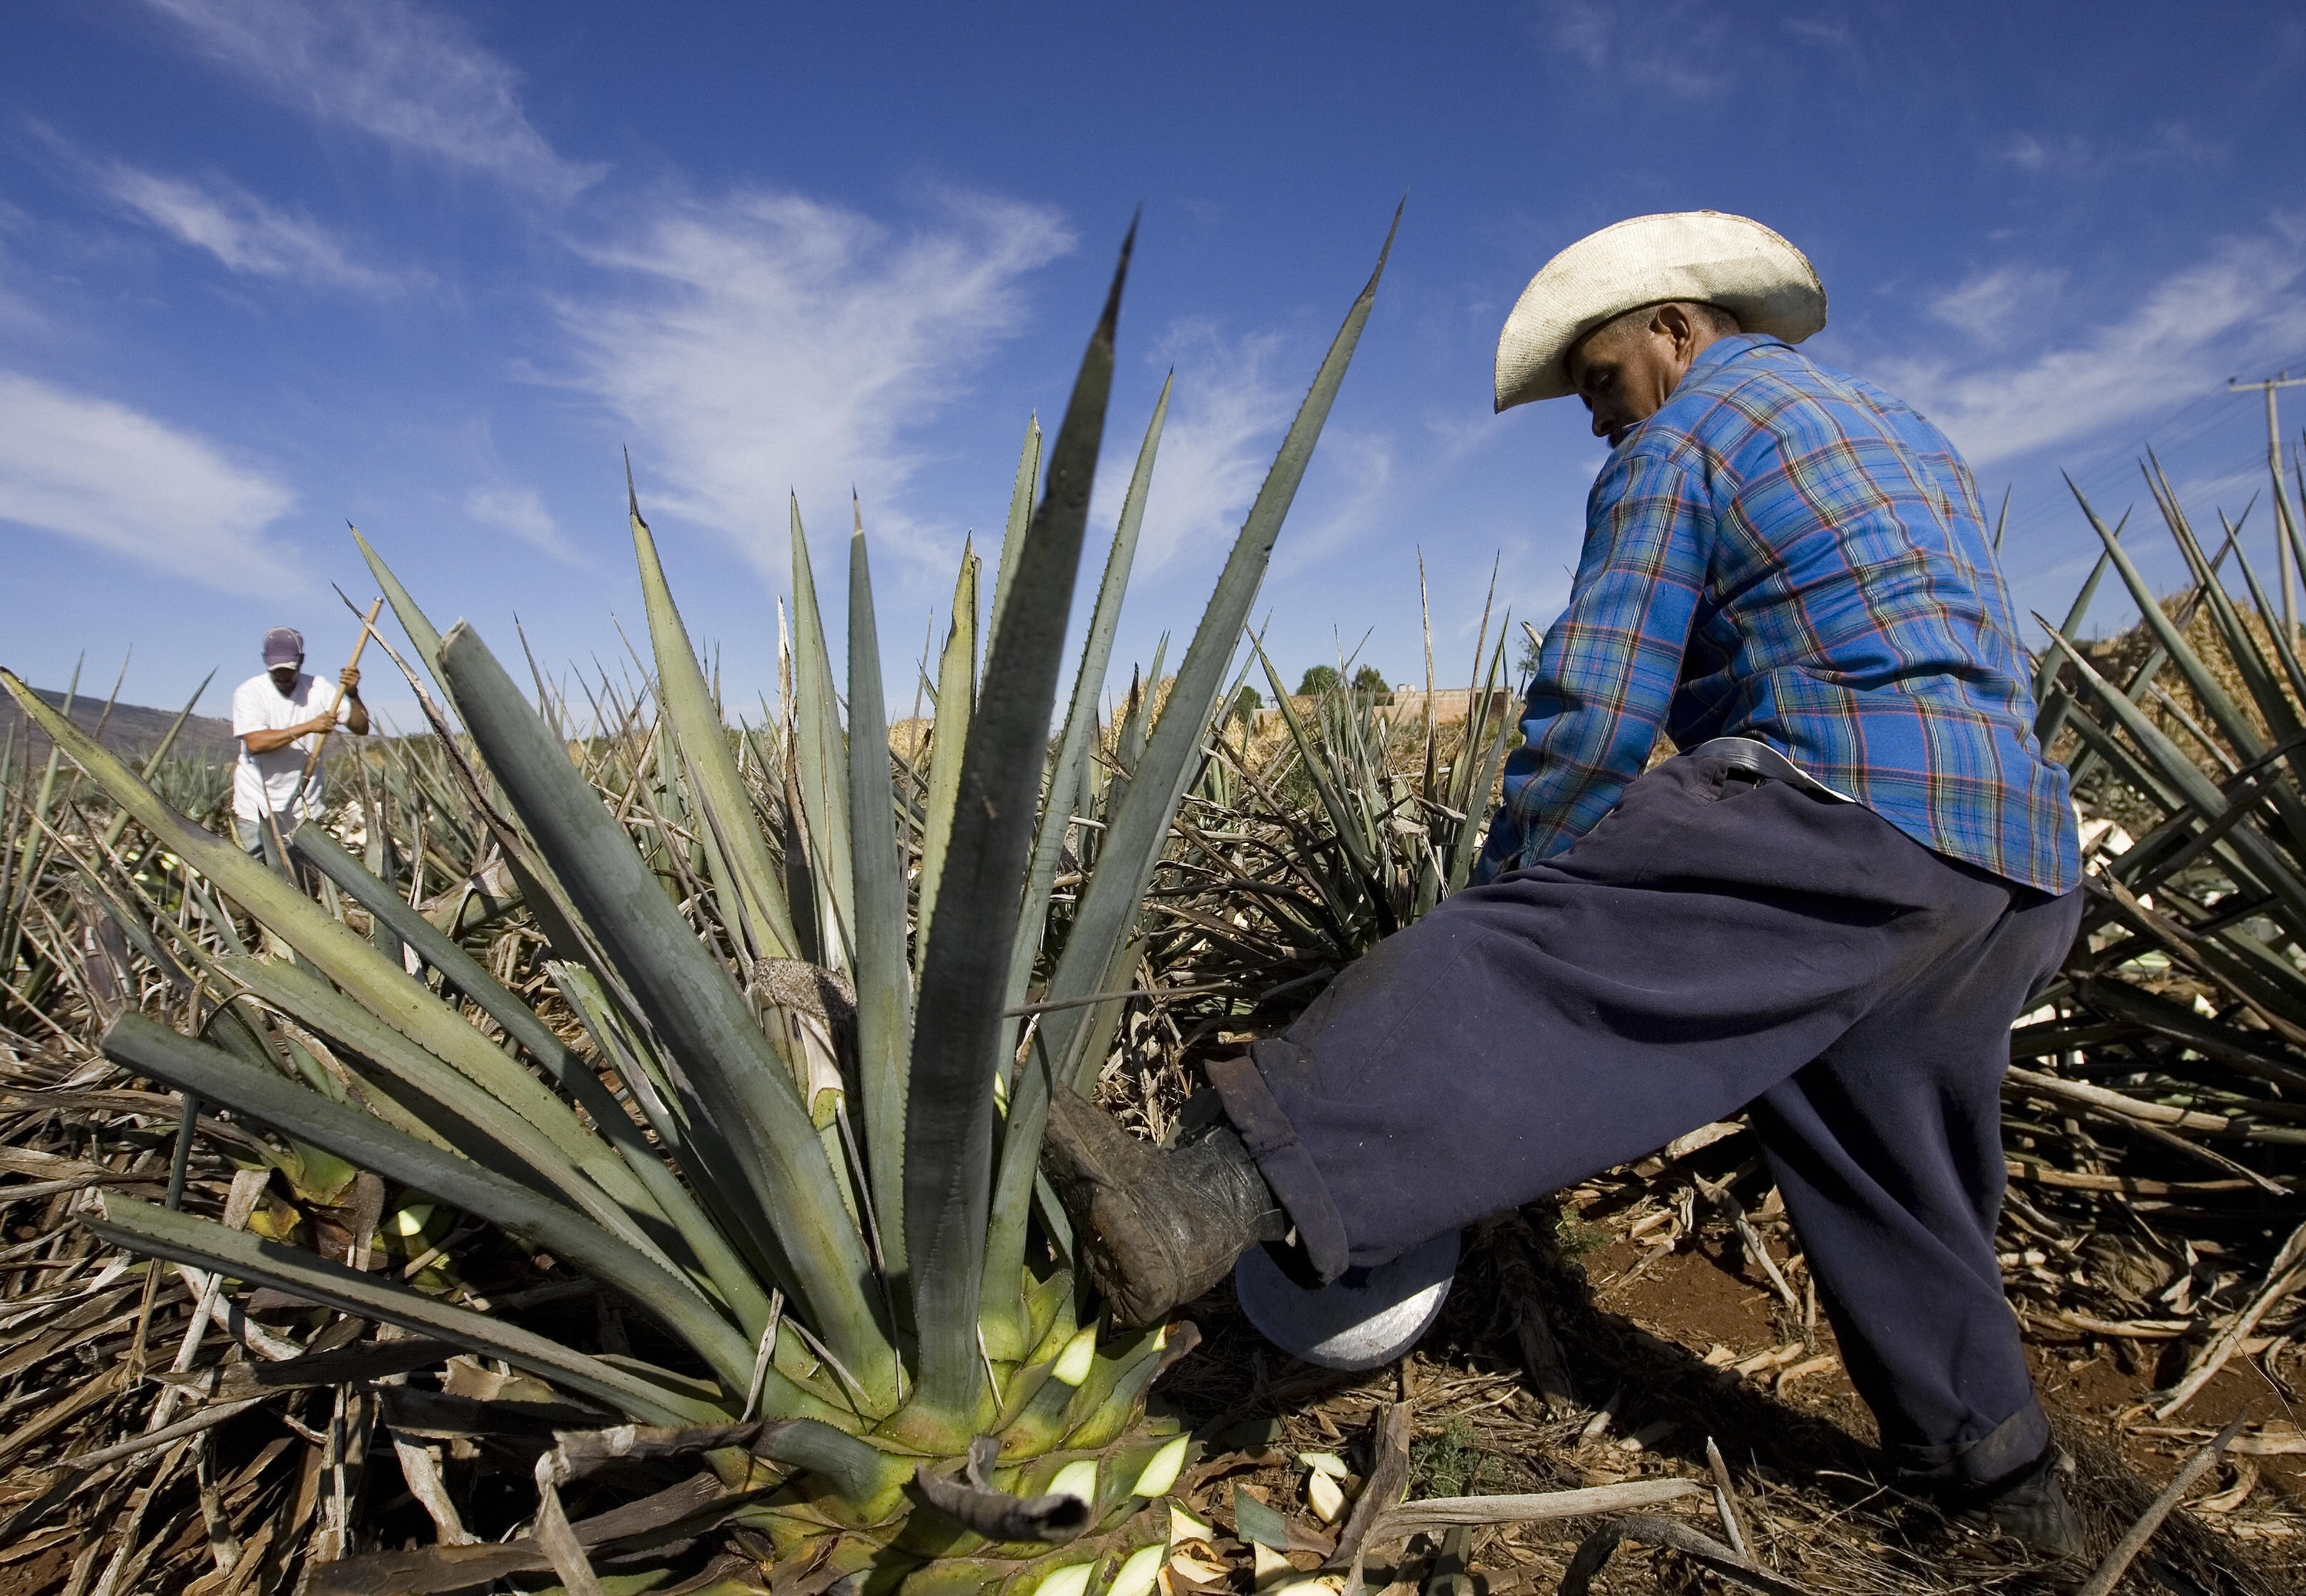 Comment la tequila est devenue la boisson nationale du Mexique |  Aujourd'hui l'histoire